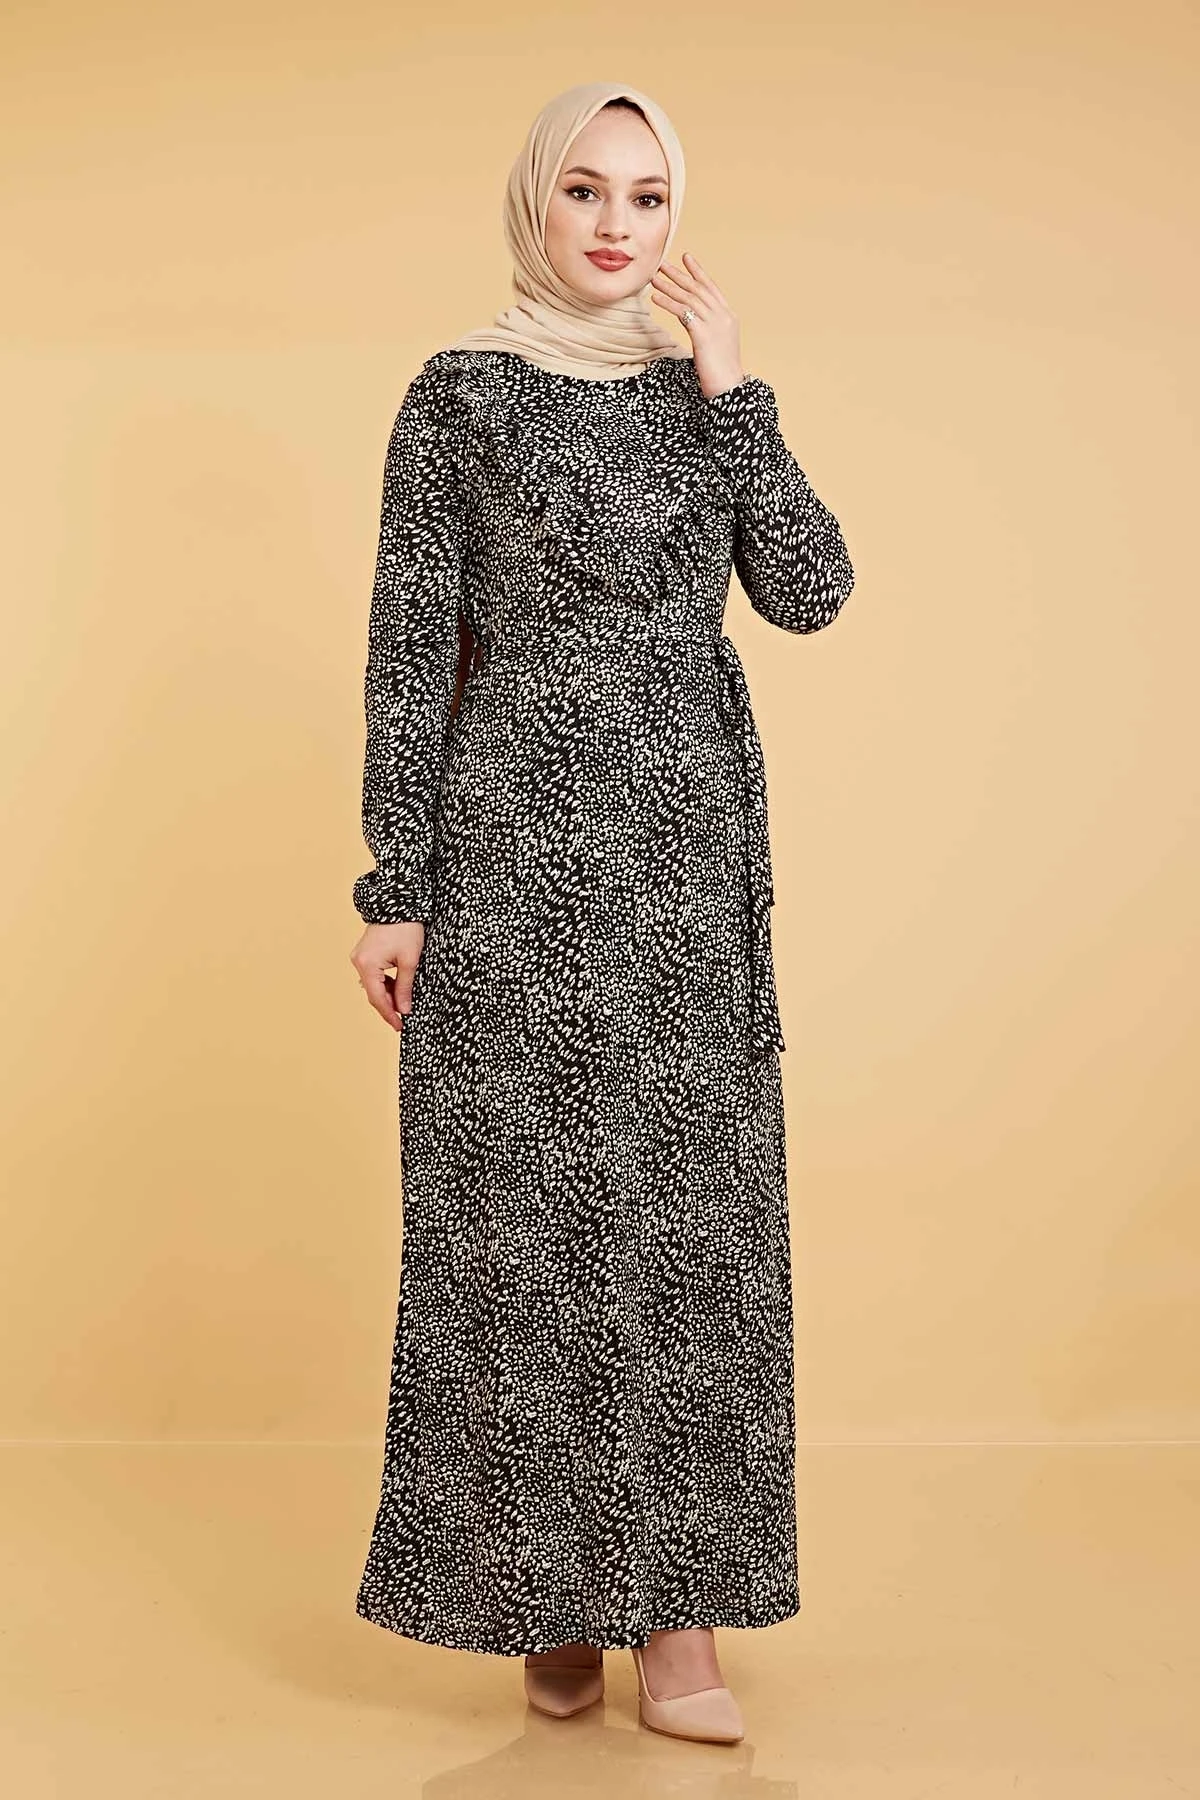 Платье женские платья 2021 кафтан абайя длинные мусульманские Вечерние платья Хиджаб турецкий хиджаб для вечеринки повседневная женская оде...